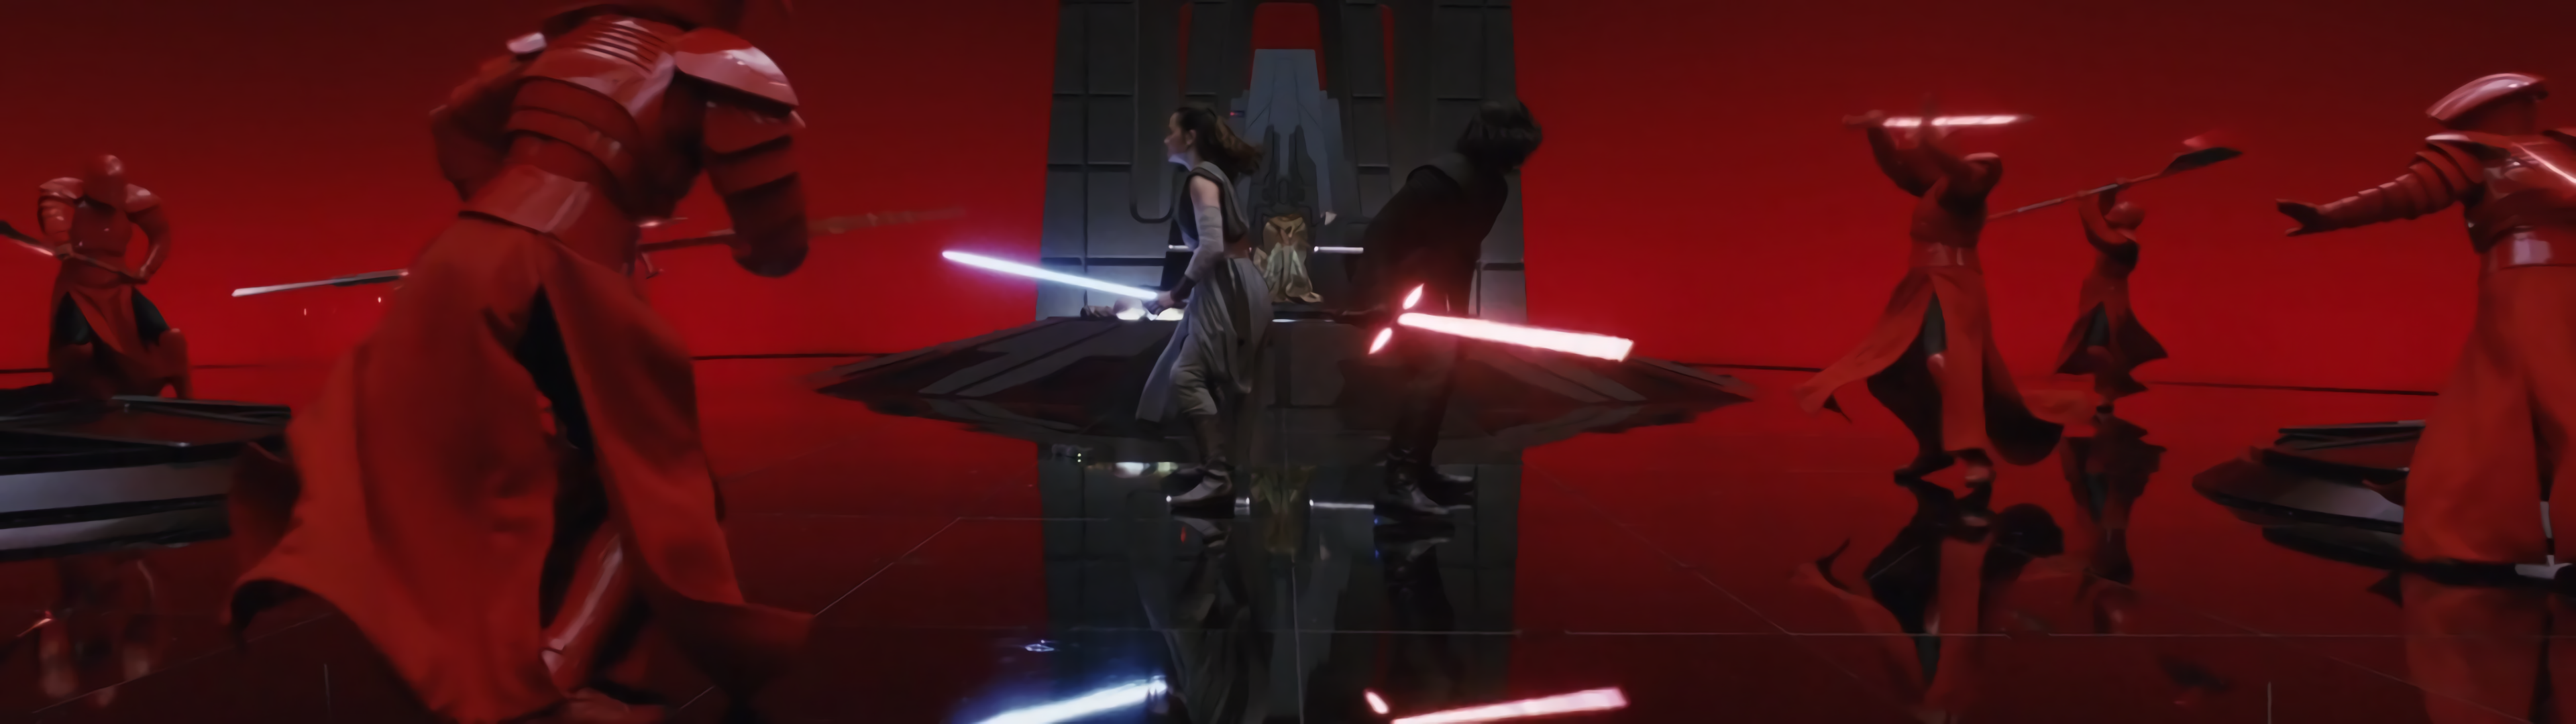 Star Wars: The Last Jedi Dual Wallpaper (3840x1080)